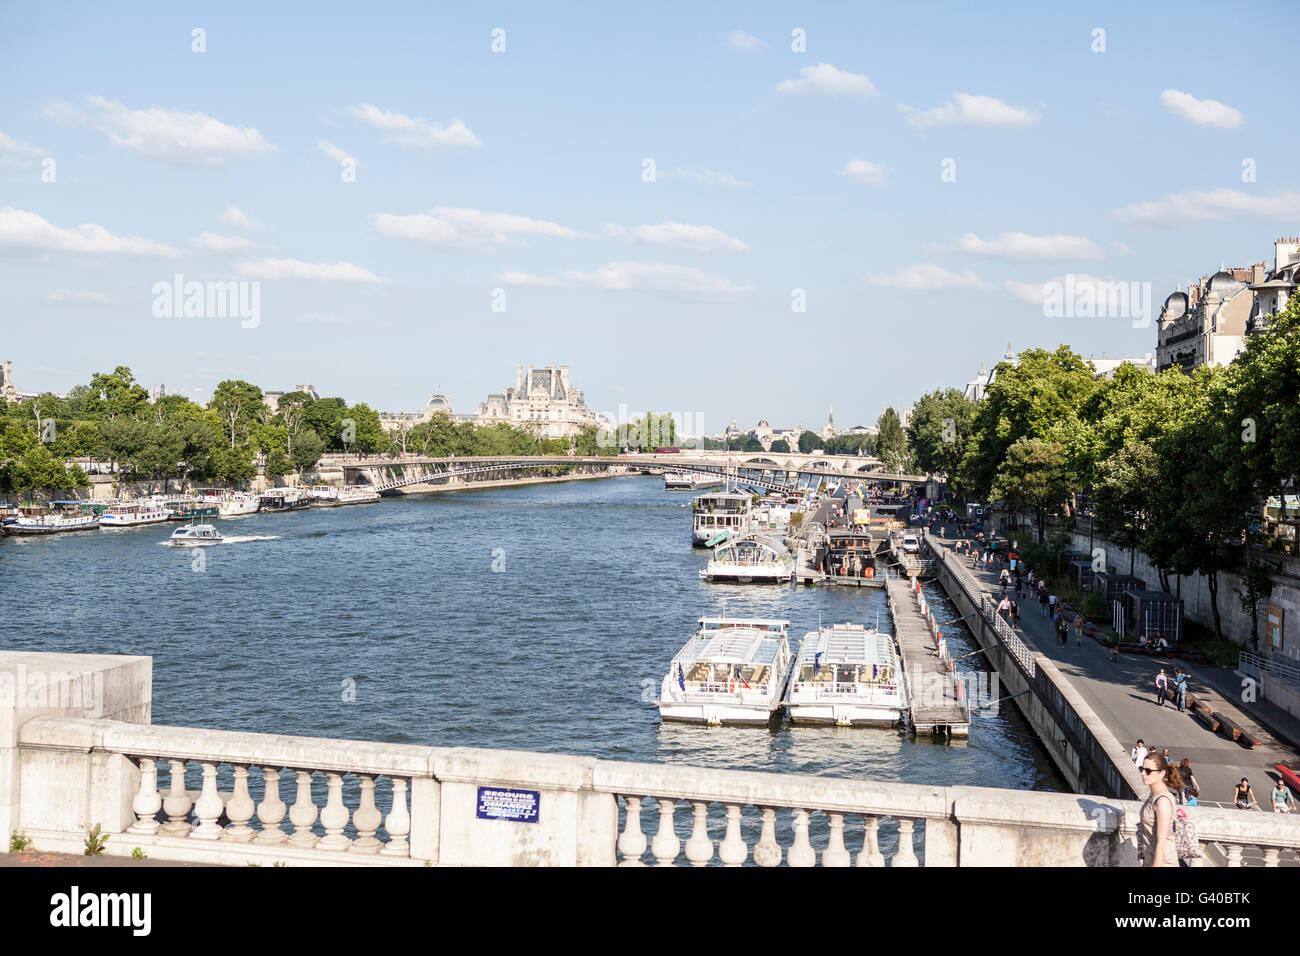 the River Seine, Paris, France Stock Photo